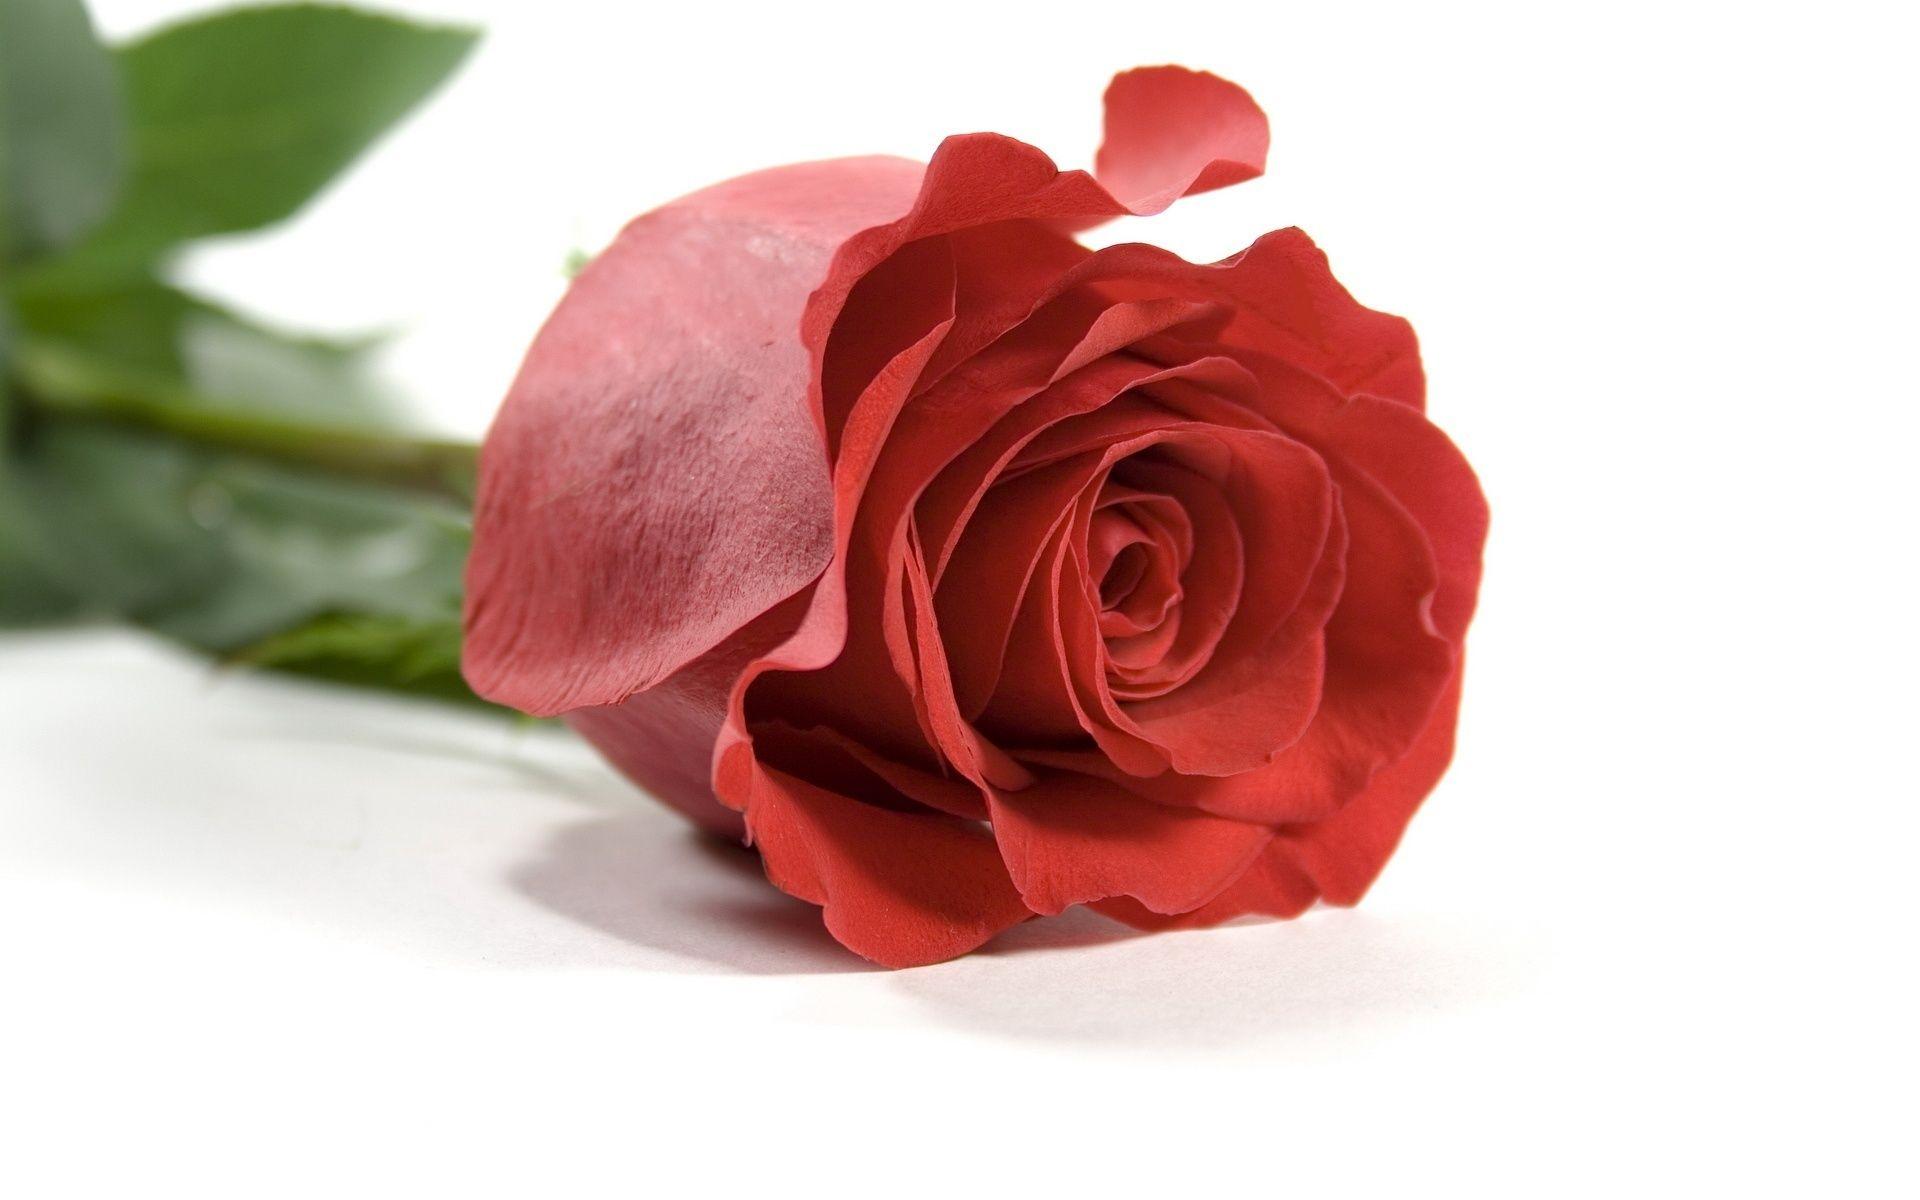 hoontoidly: Rose Love Image